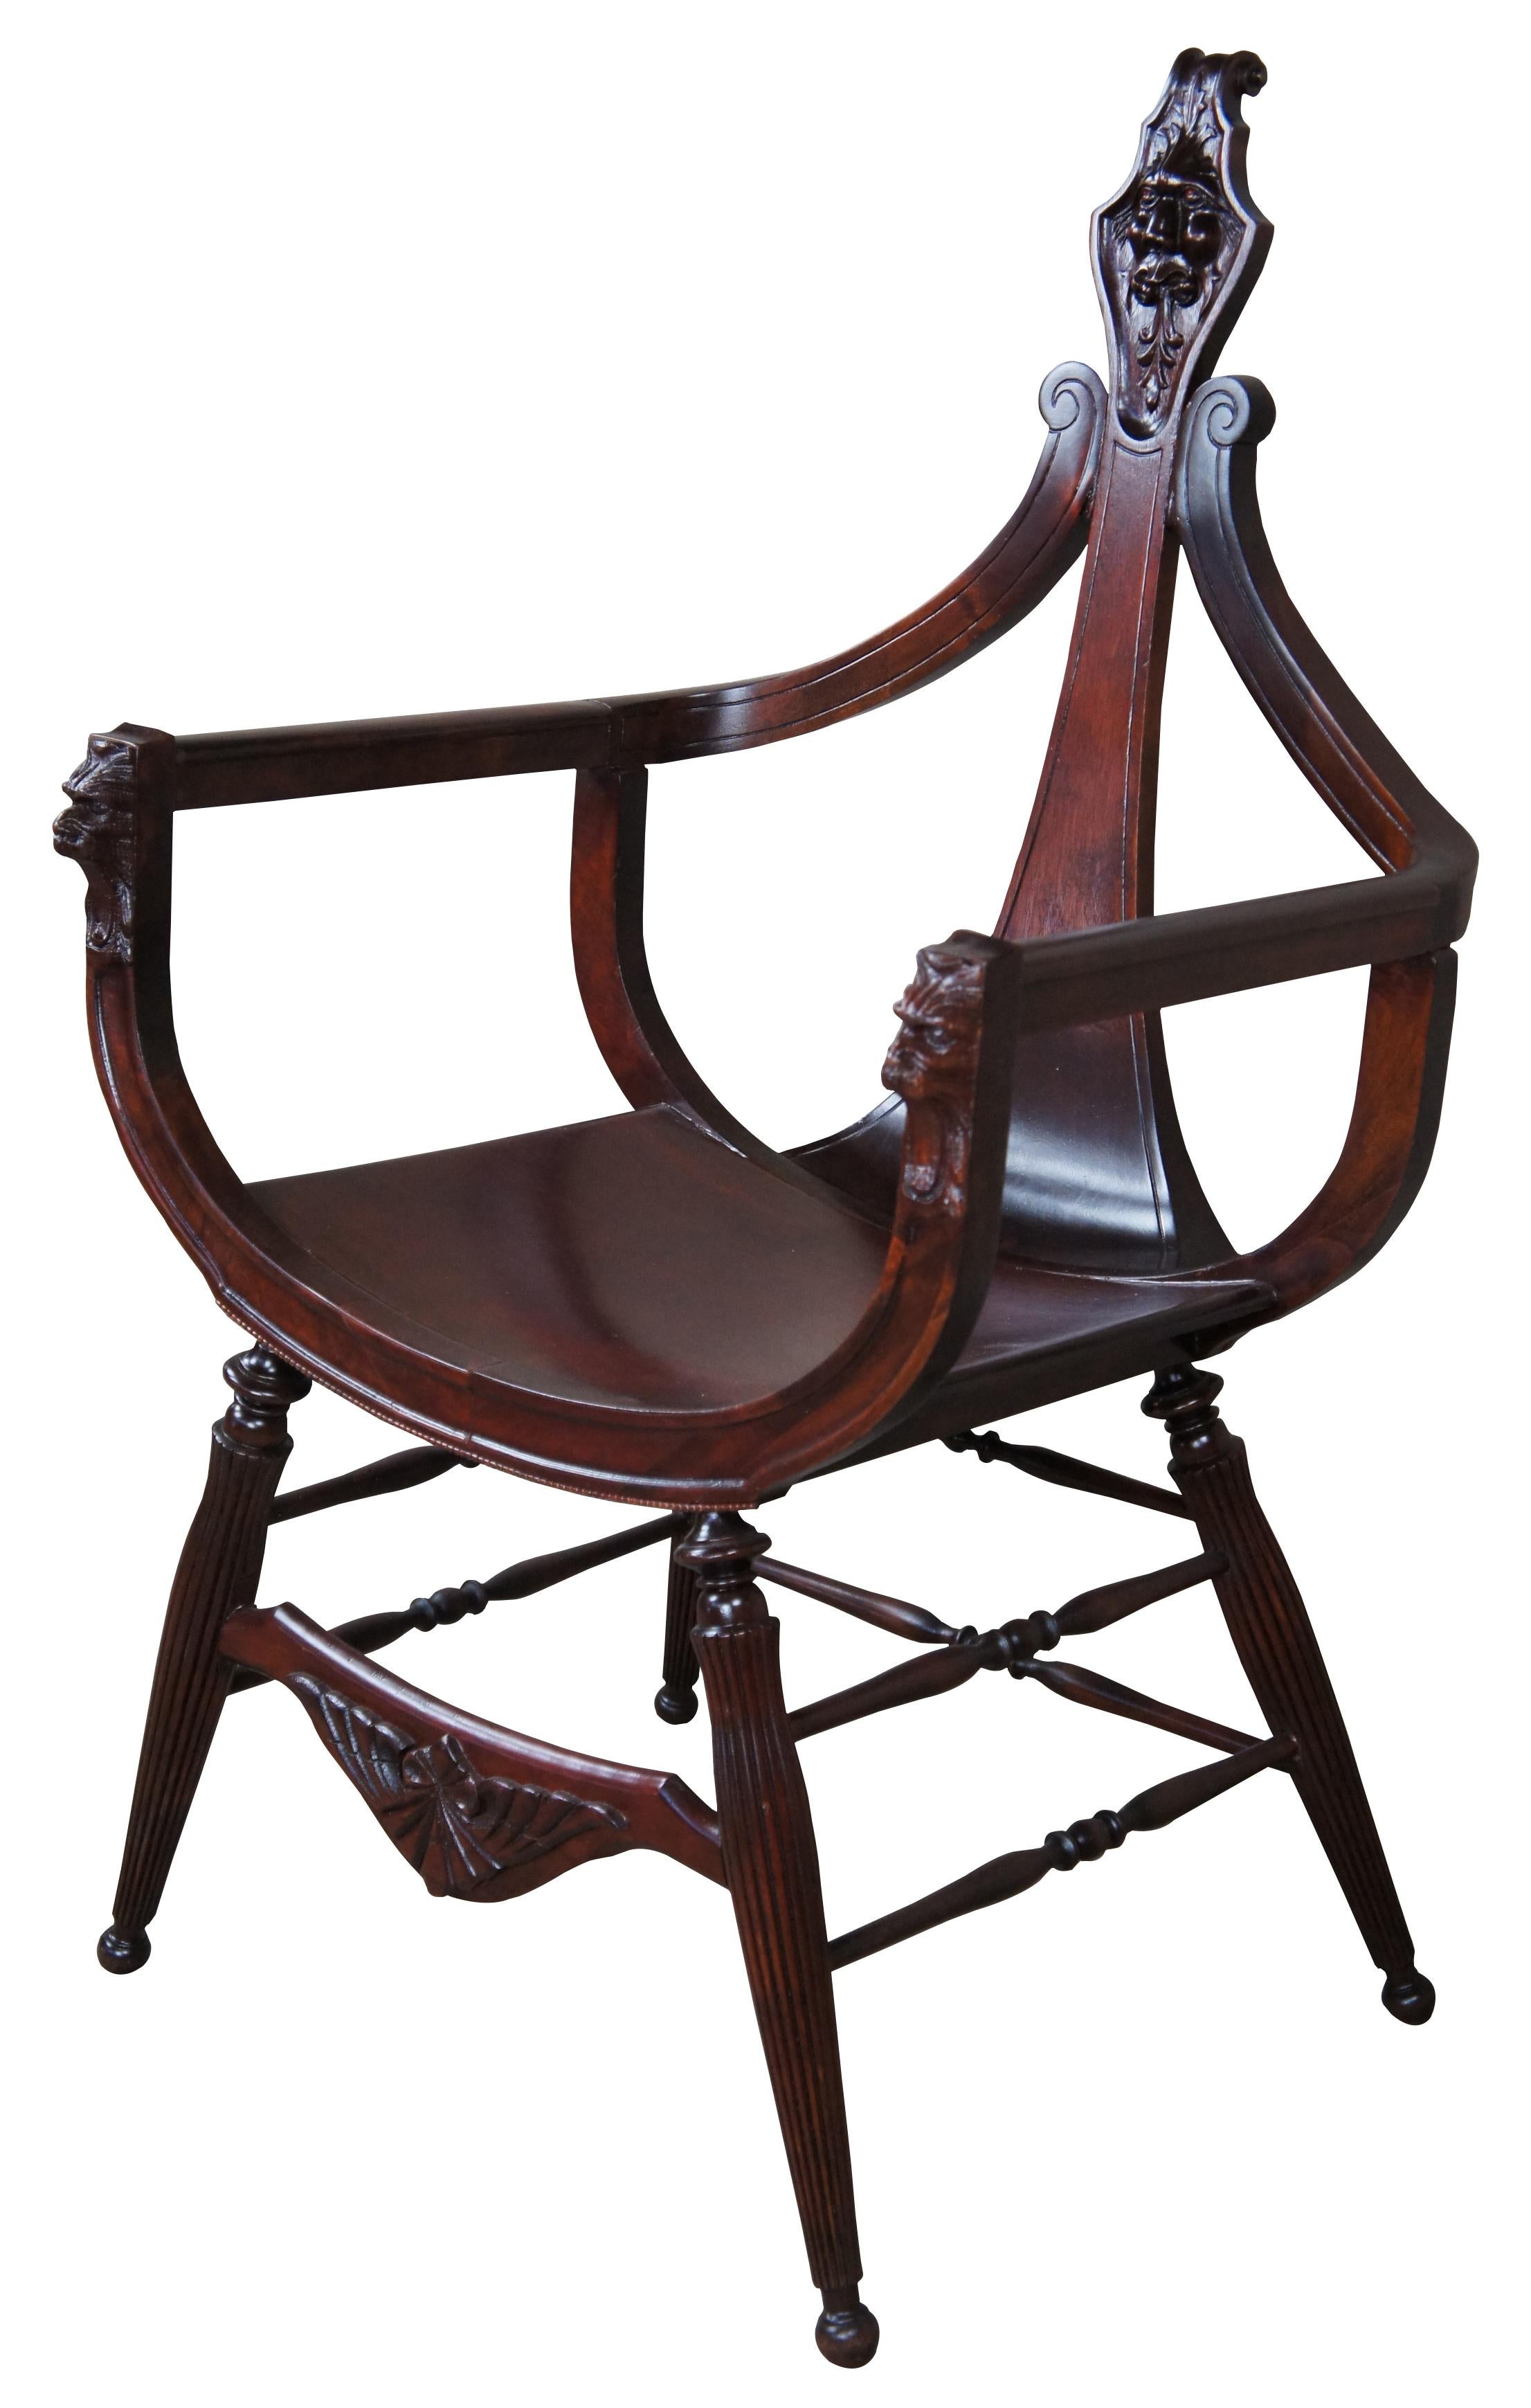 Ein antiker viktorianischer Beistellsessel aus dem späten 19. Jahrhundert. Gefertigt aus Mahagoniholz mit einer Curule- oder Sattelsitzform und Löwenkopfschnitzereien. Die Rückseite des Cellohalses verjüngt sich zu einem verschnörkelten Scheitel.